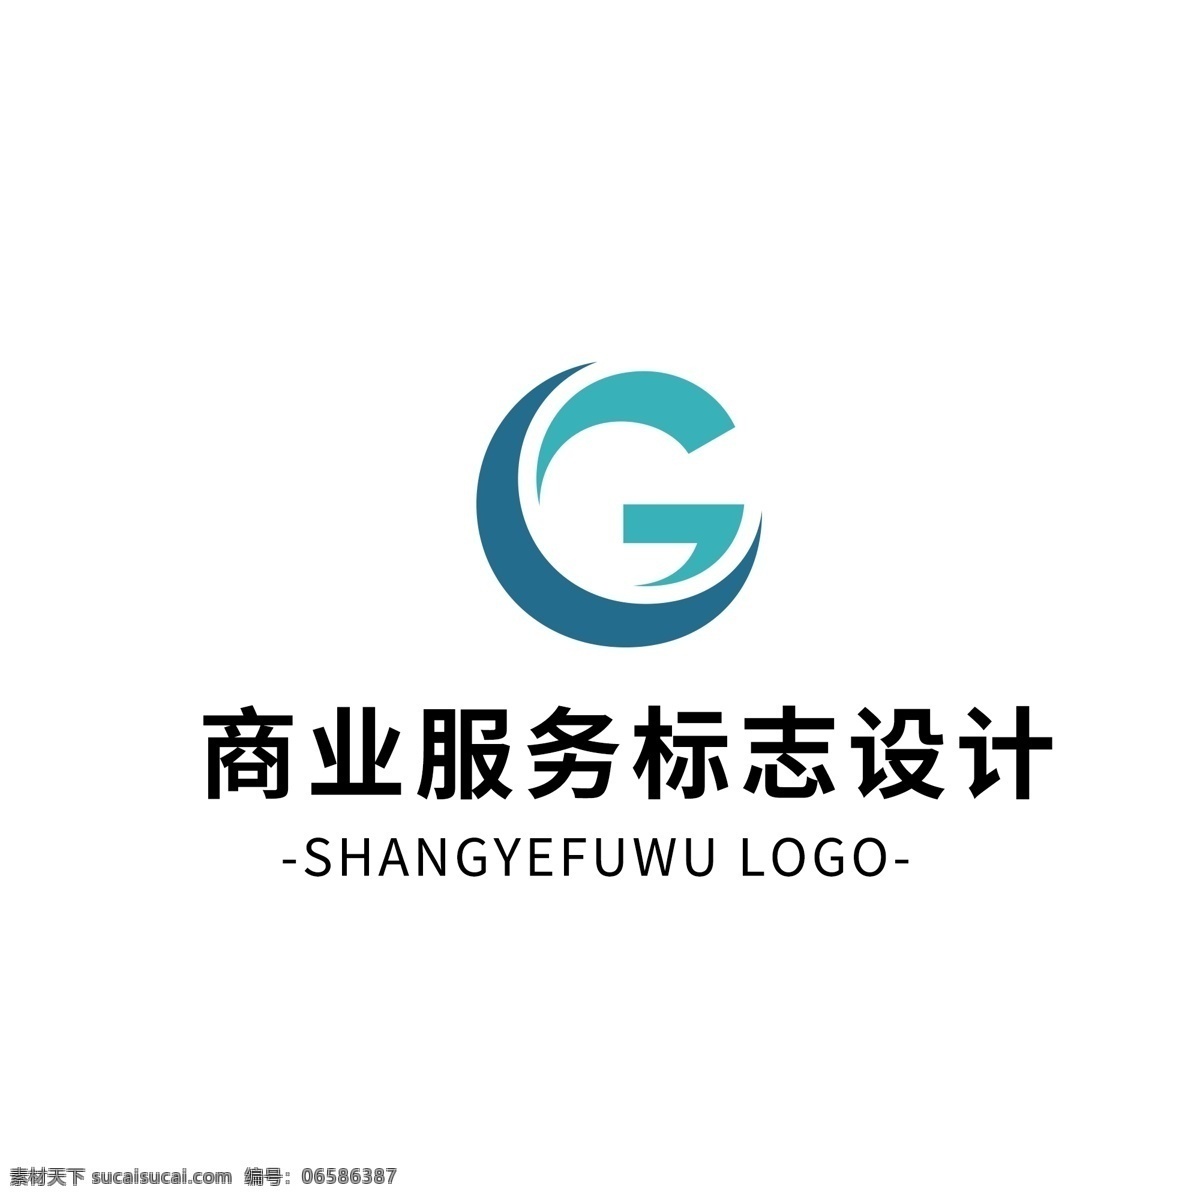 简约 大气 创意 商业服务 logo 标志设计 蓝色 字母 矢量 图形